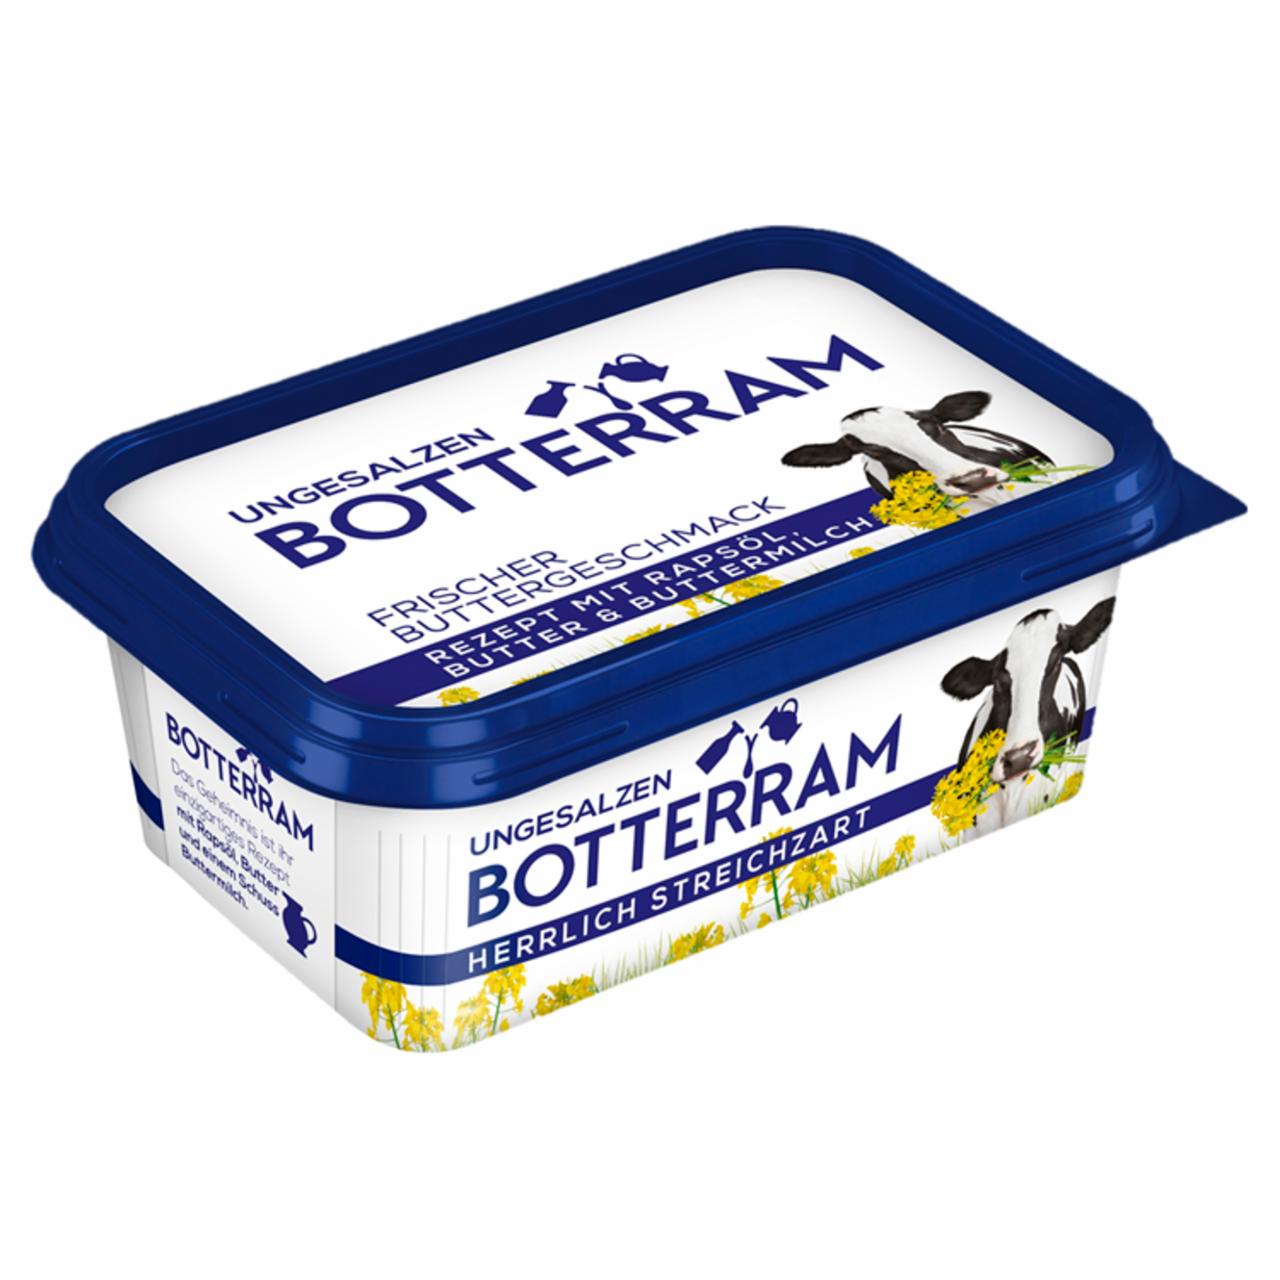 Képek - Botterram Original 70% zsírtartalmú kenhető keverék 225 g